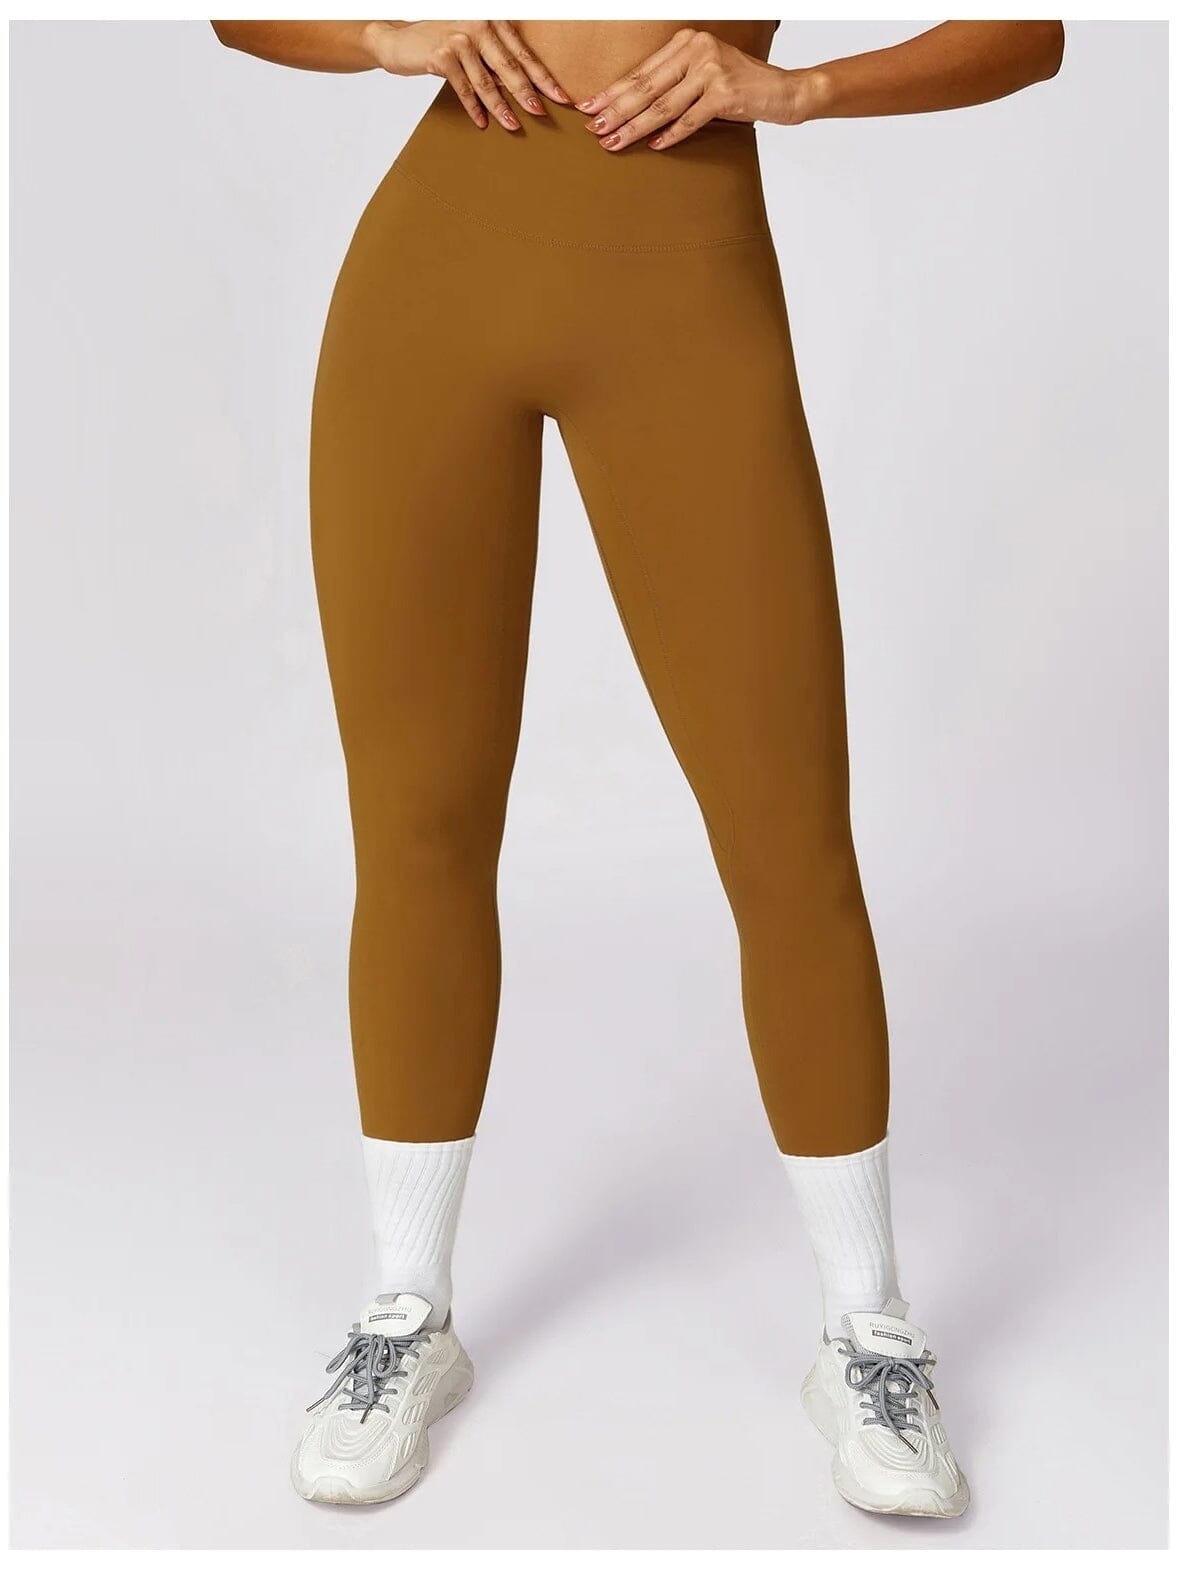 Legging Push Up Taille Haute Sans Couture - BodySculpt Leggings Ultime Legging S Marron 